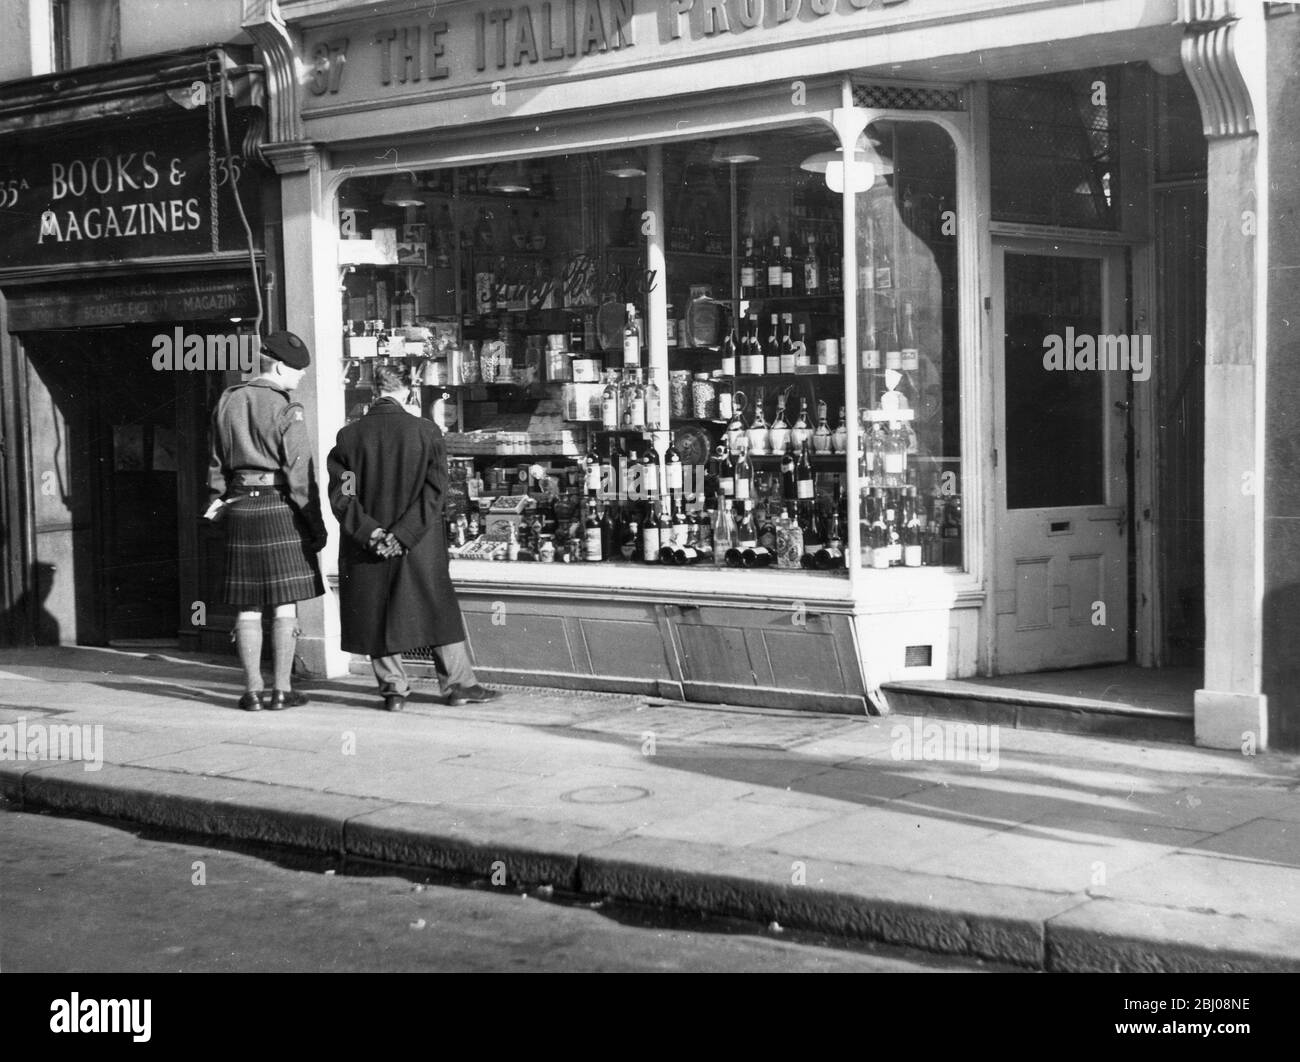 Italian Produce Company at 37 Old Compton Street, Soho, London, England. - undated Stock Photo